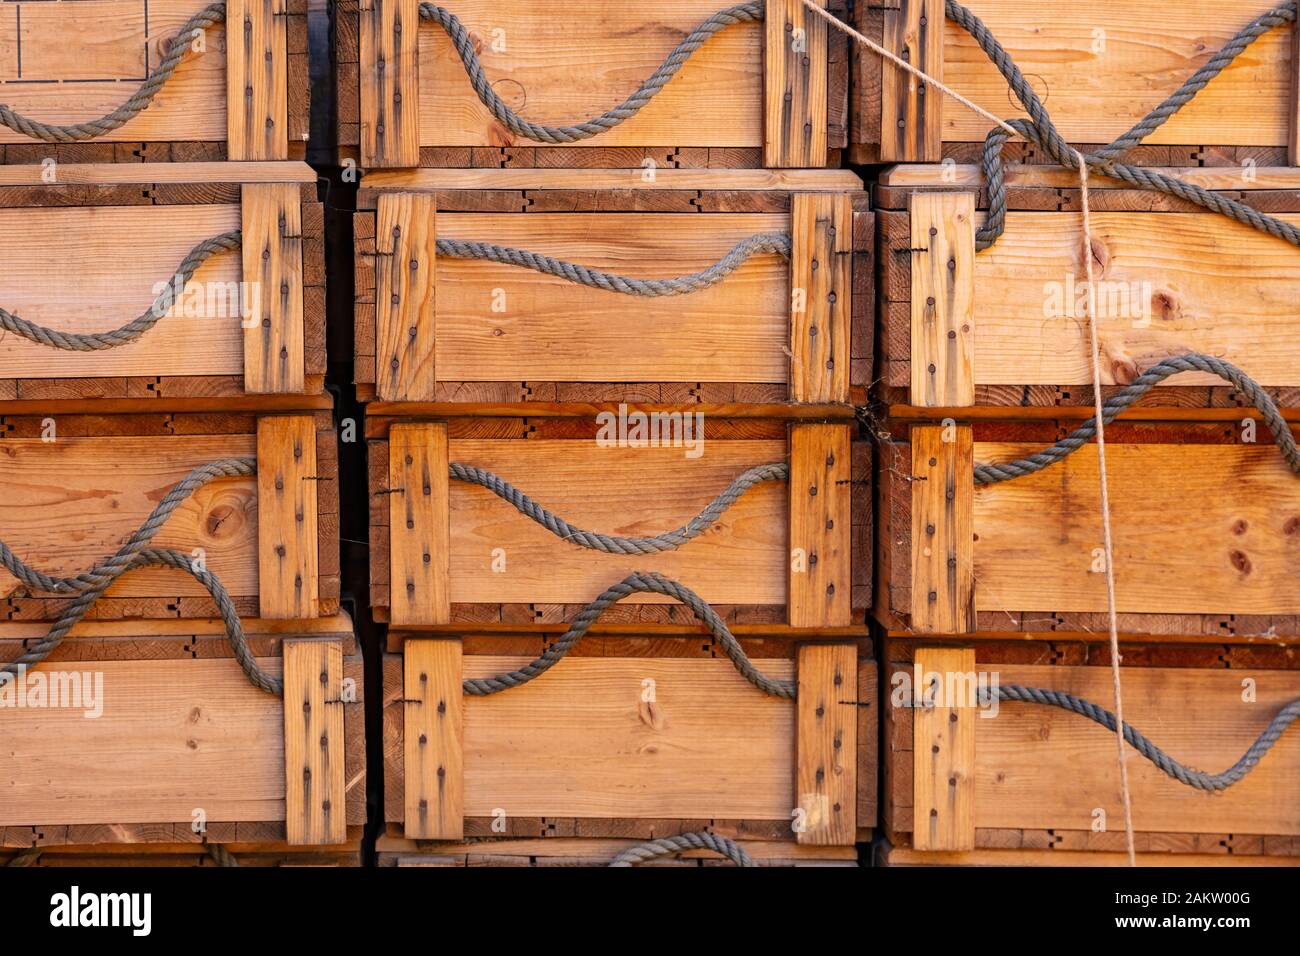 Kästen Kisten aus Holz mit Seilen, wie in den Spalten Griff, voll Hintergrund Textur. Gestapelte Kisten für Lagerung und Transport. Stockfoto